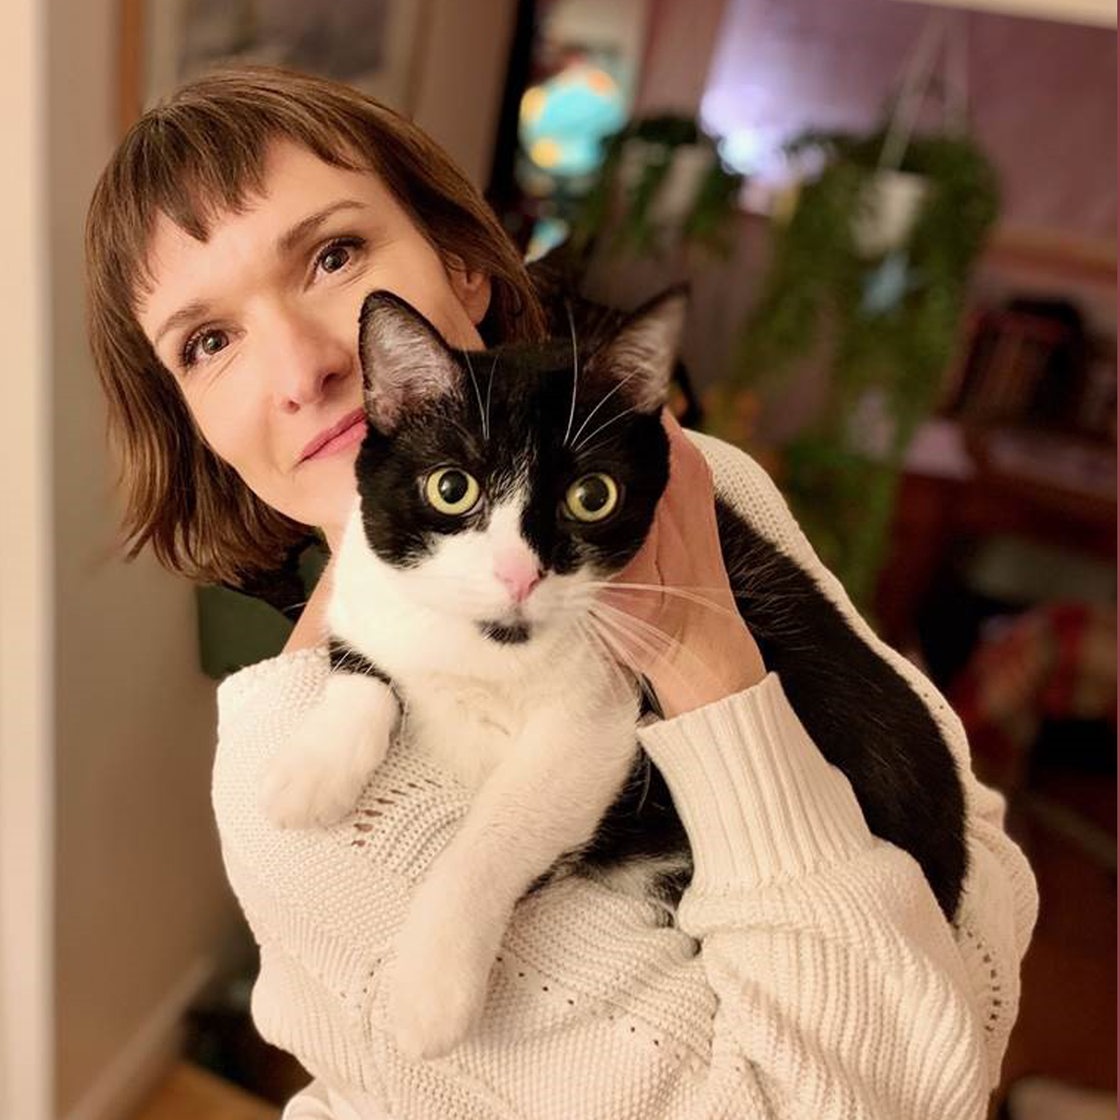 Die Autorin Marie Pavlenko mit ihrer schwarz-weißen Katze auf dem Arm